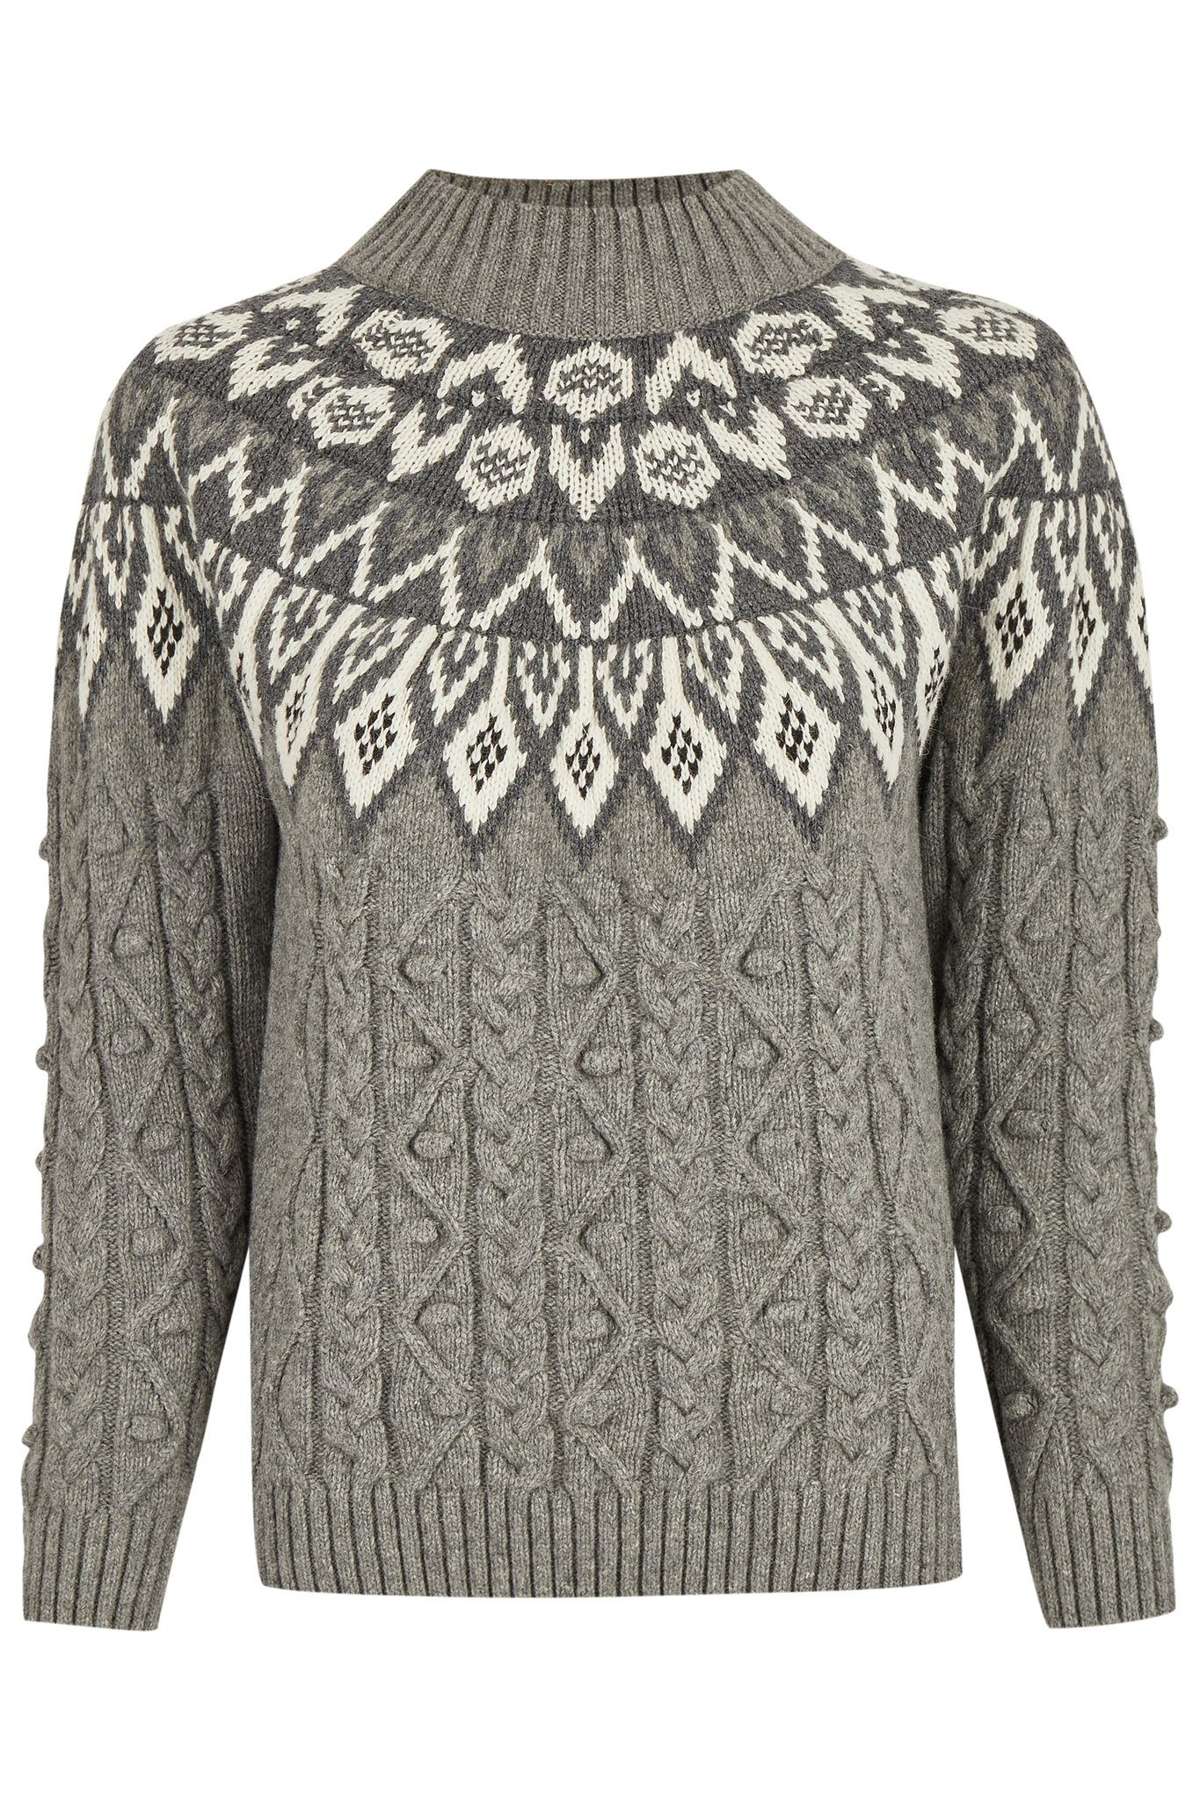 FELICITAS вязаный свитер FELICITAS серый свитер в изысканном норвежском стиле